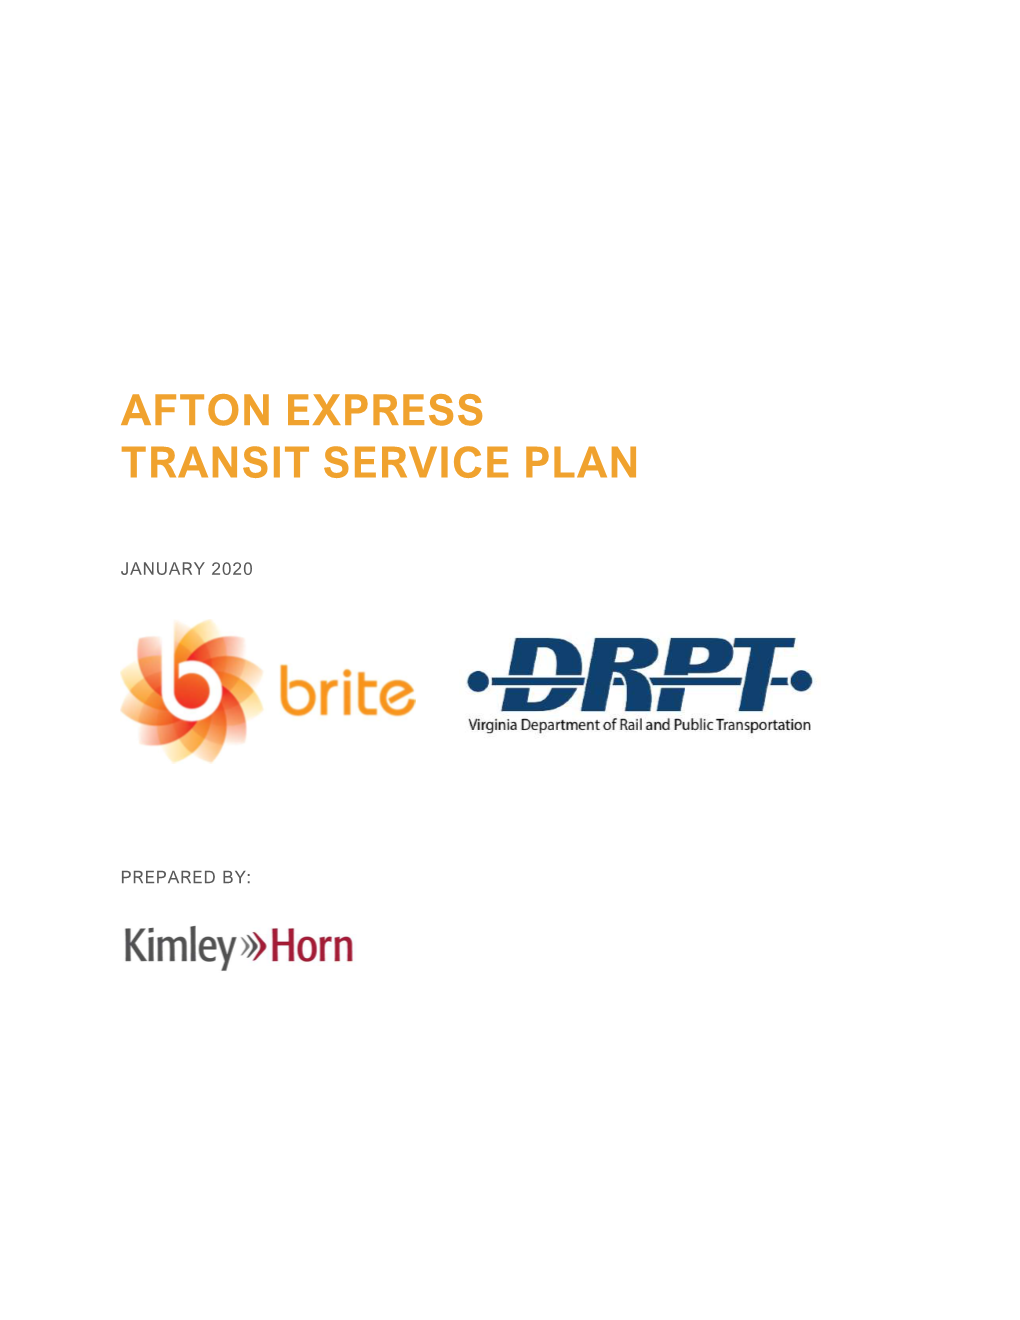 Afton Express Transit Service Plan